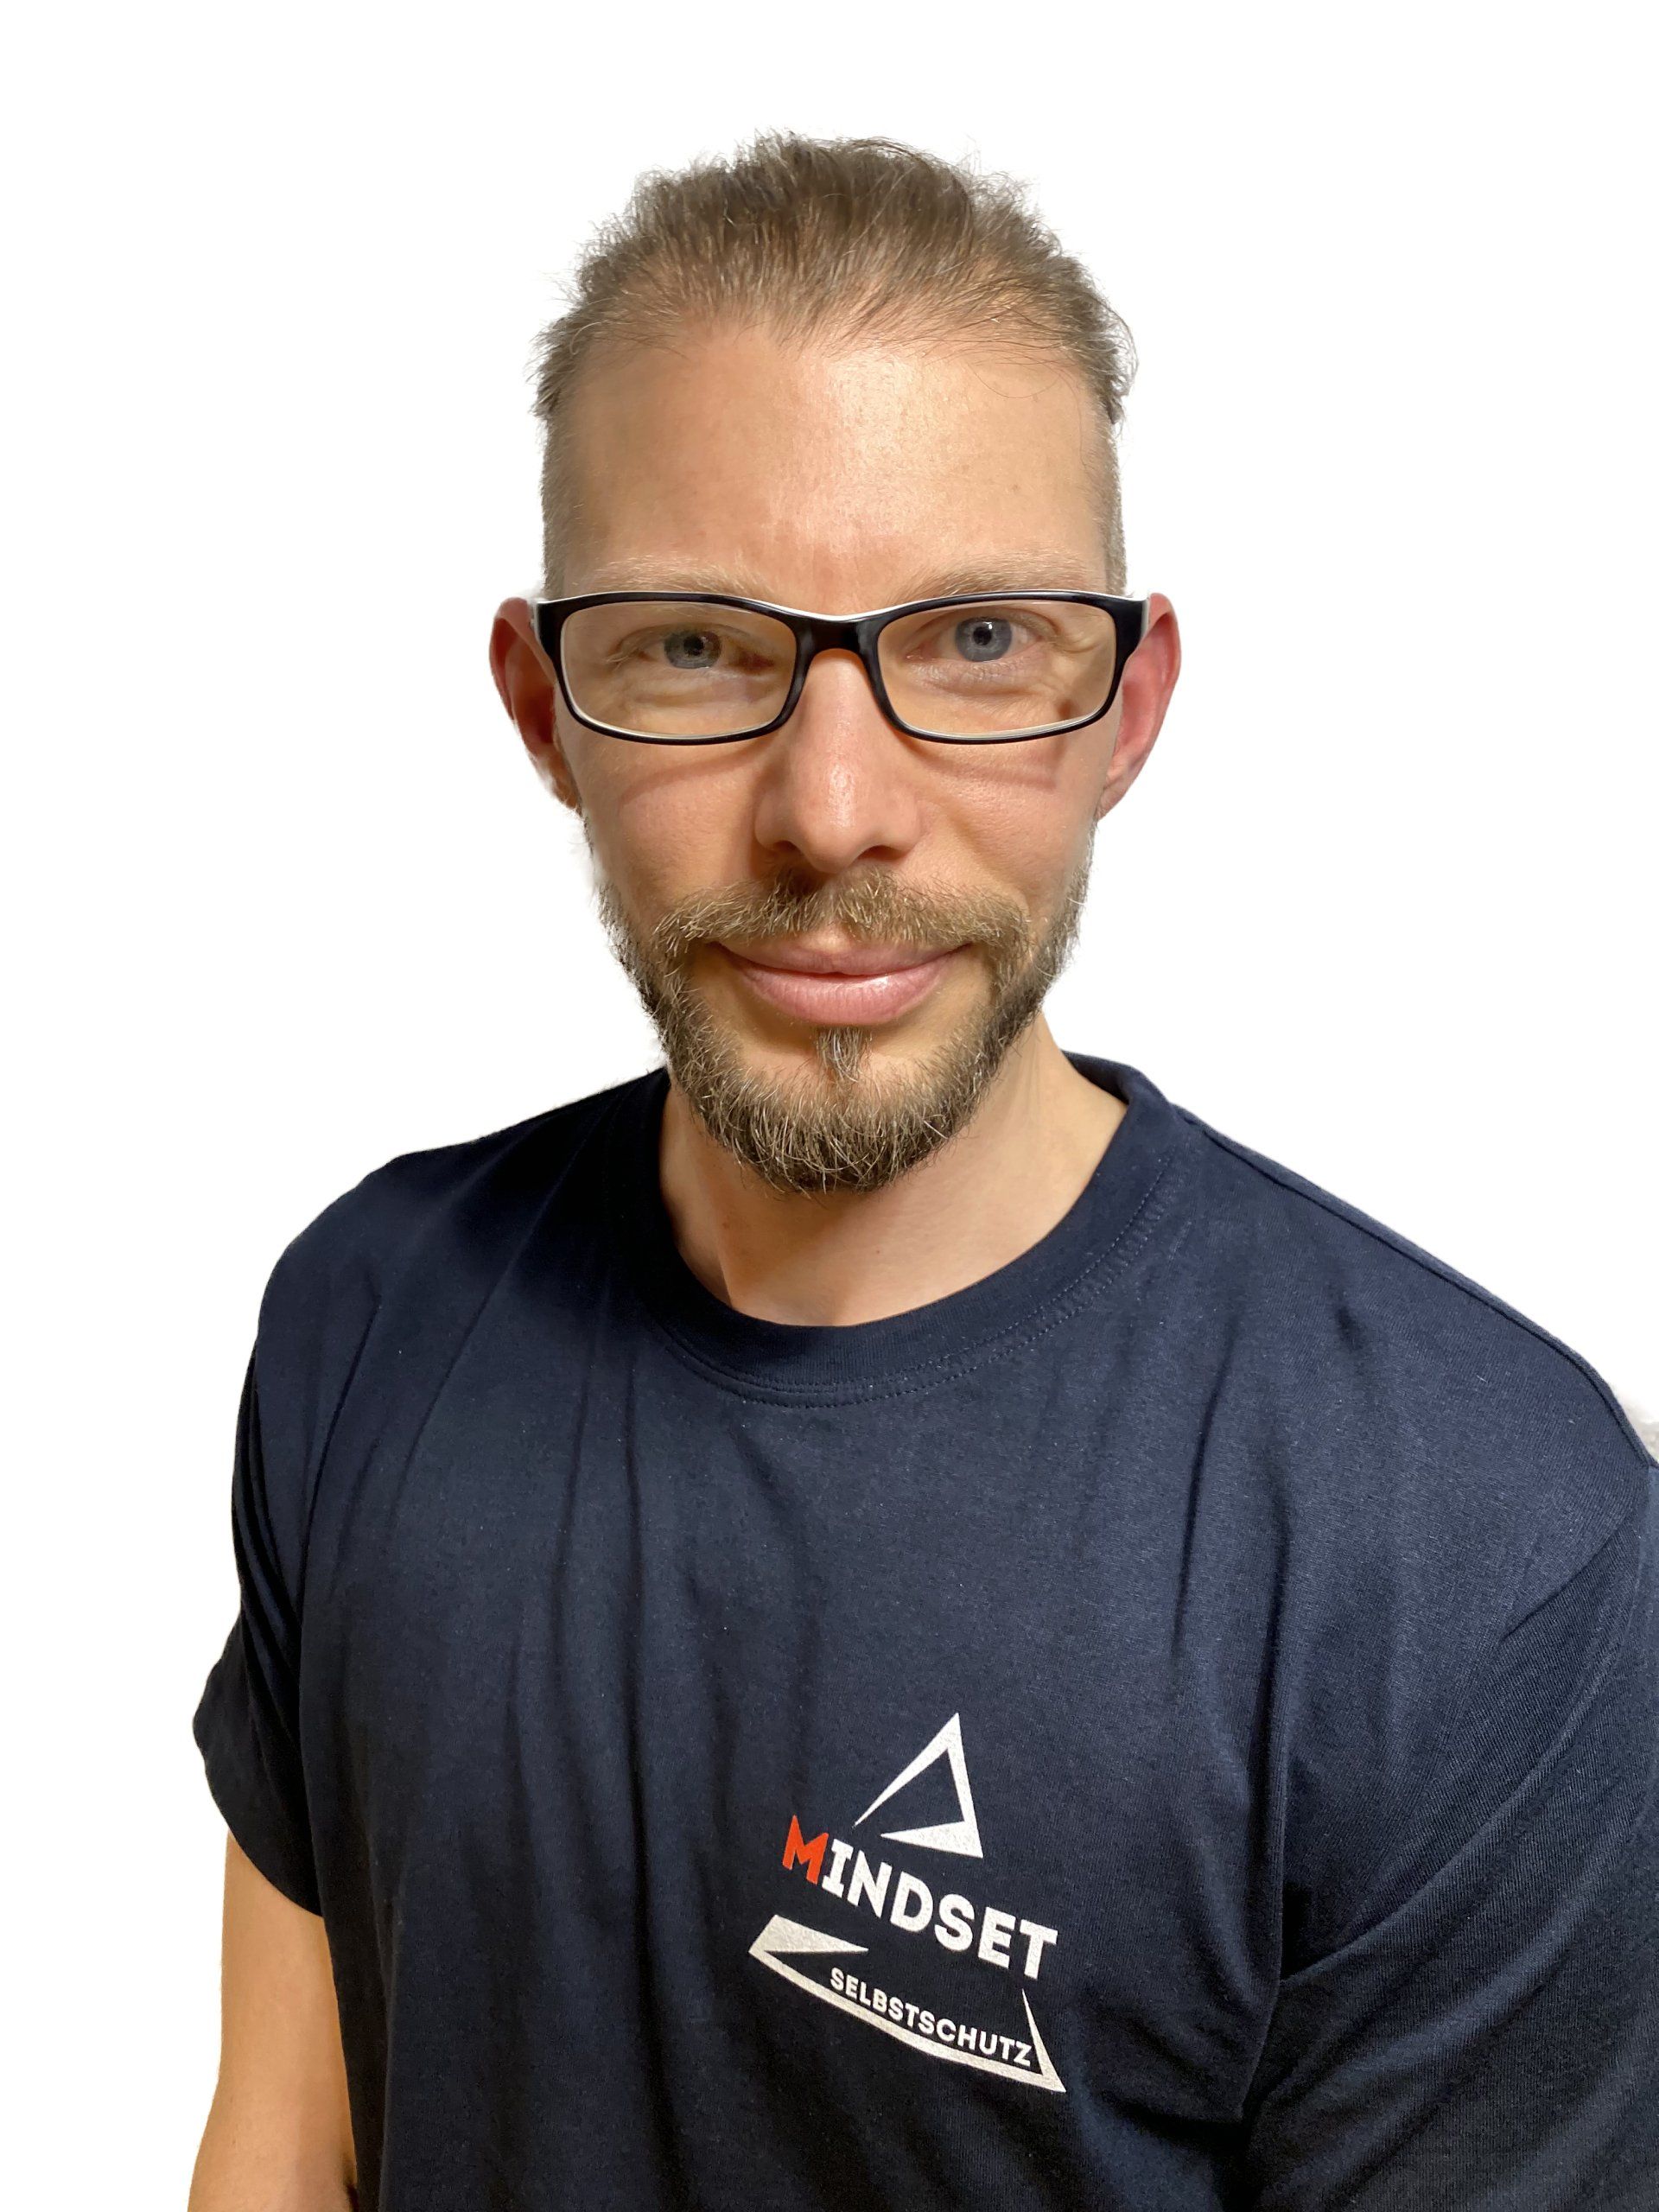 Stefan Lurz - Team Mindset Selbstschutz Selbstverteidigung Schweinfurt